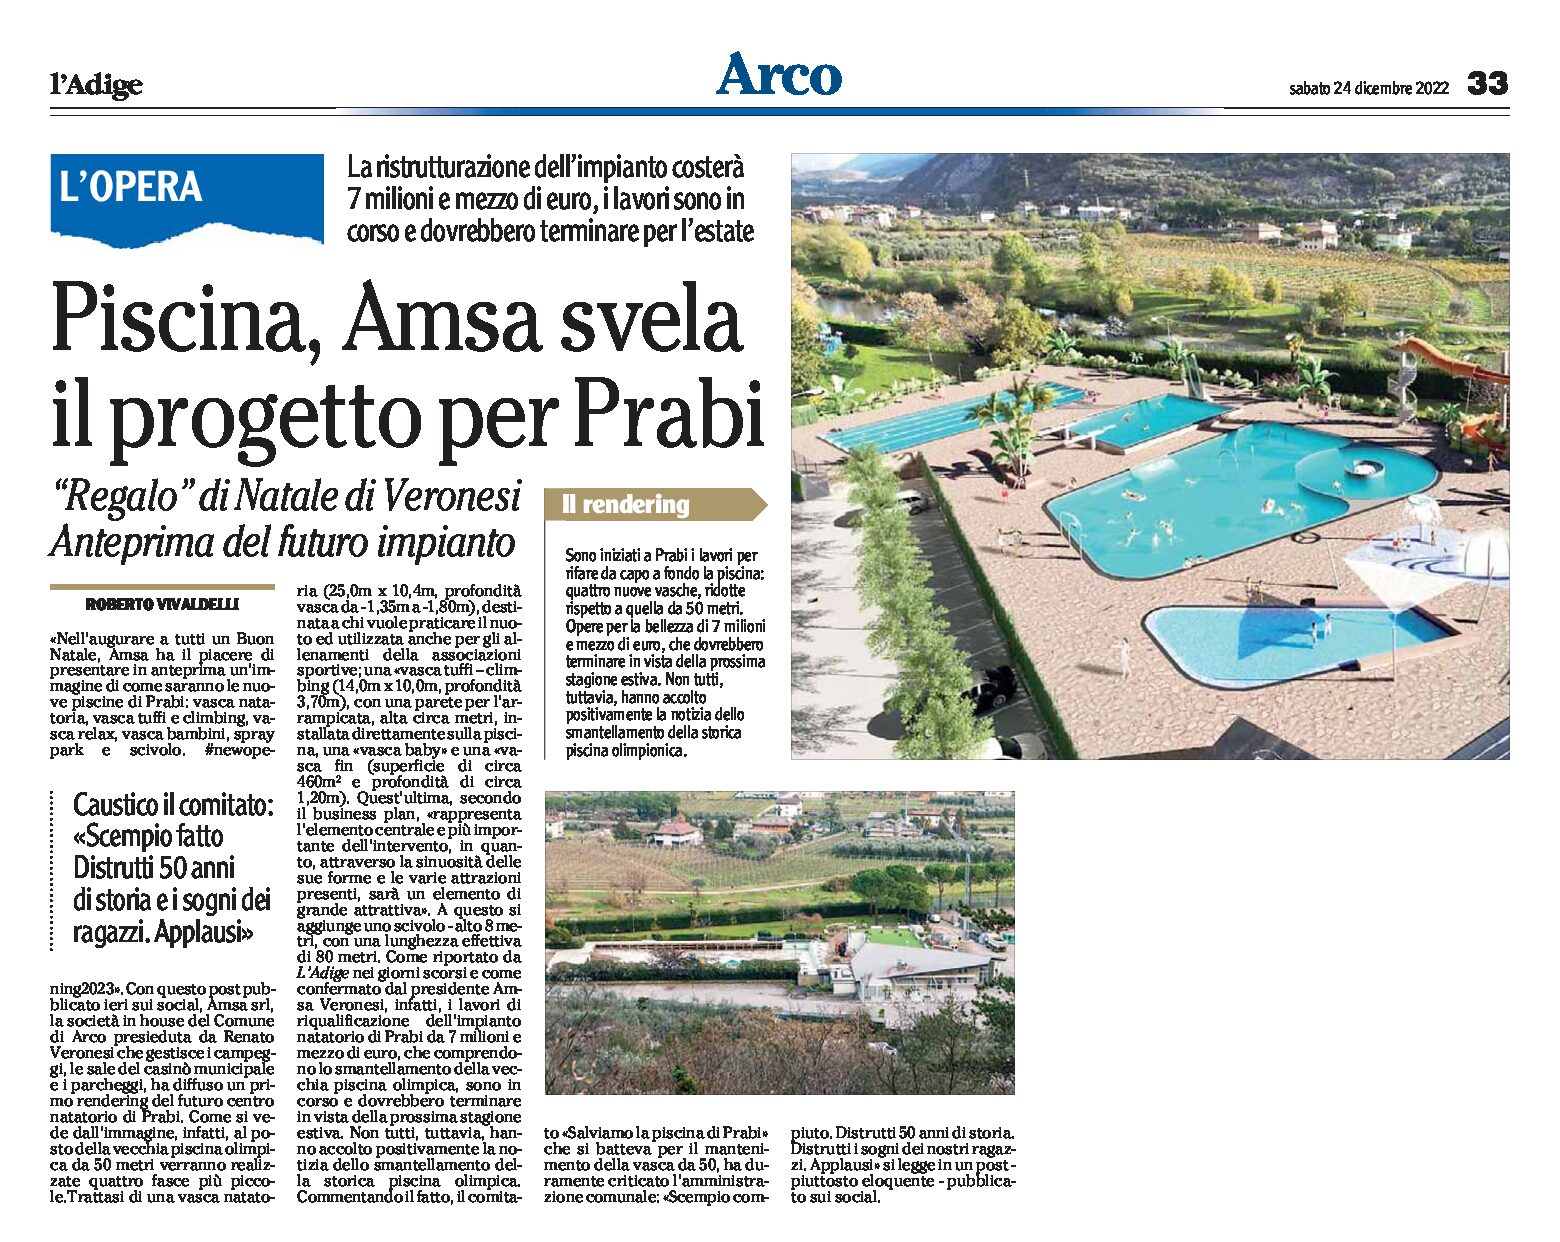 Arco, piscina di Prabi: Amsa svela il progetto. Anteprima del futuro impianto